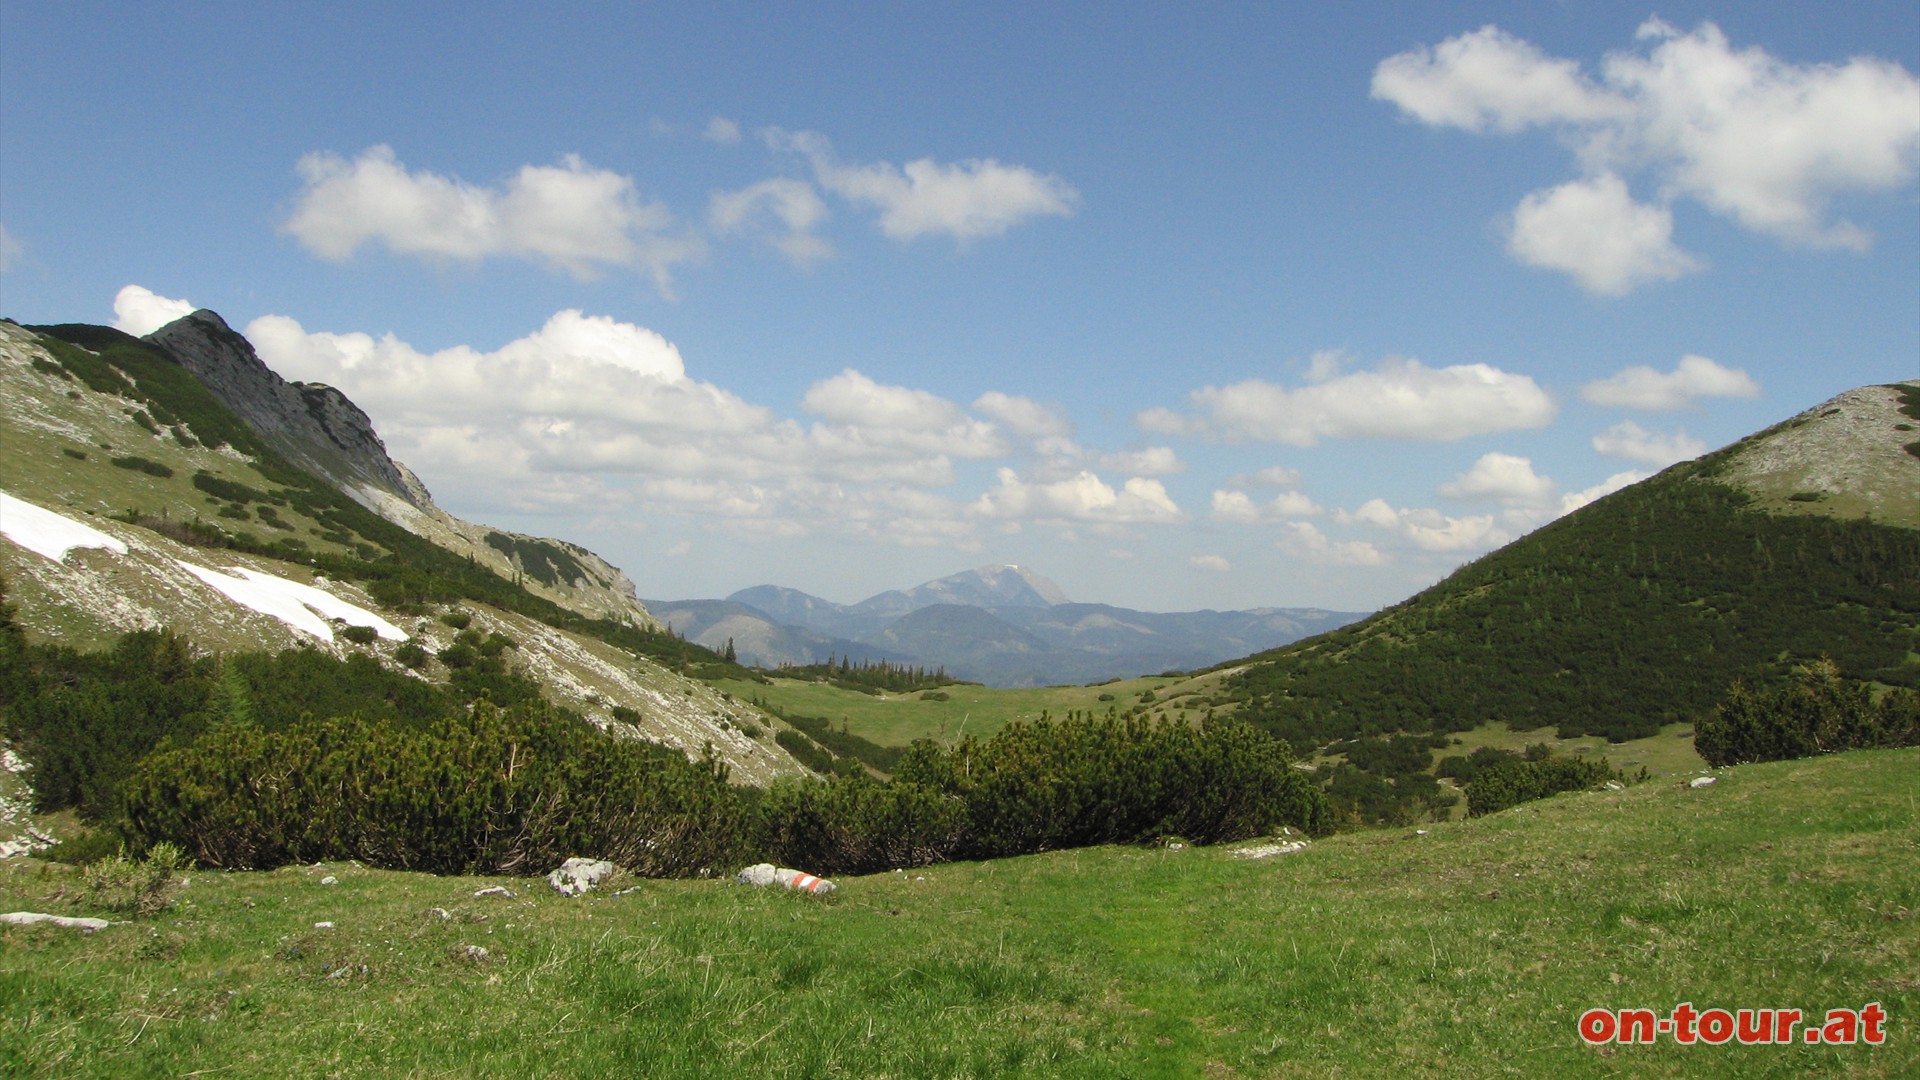 Rckblick: In der Mitte der tscher, links der Fadenkamp und rechts  noch der aufsteigende Hang des Graskogel.